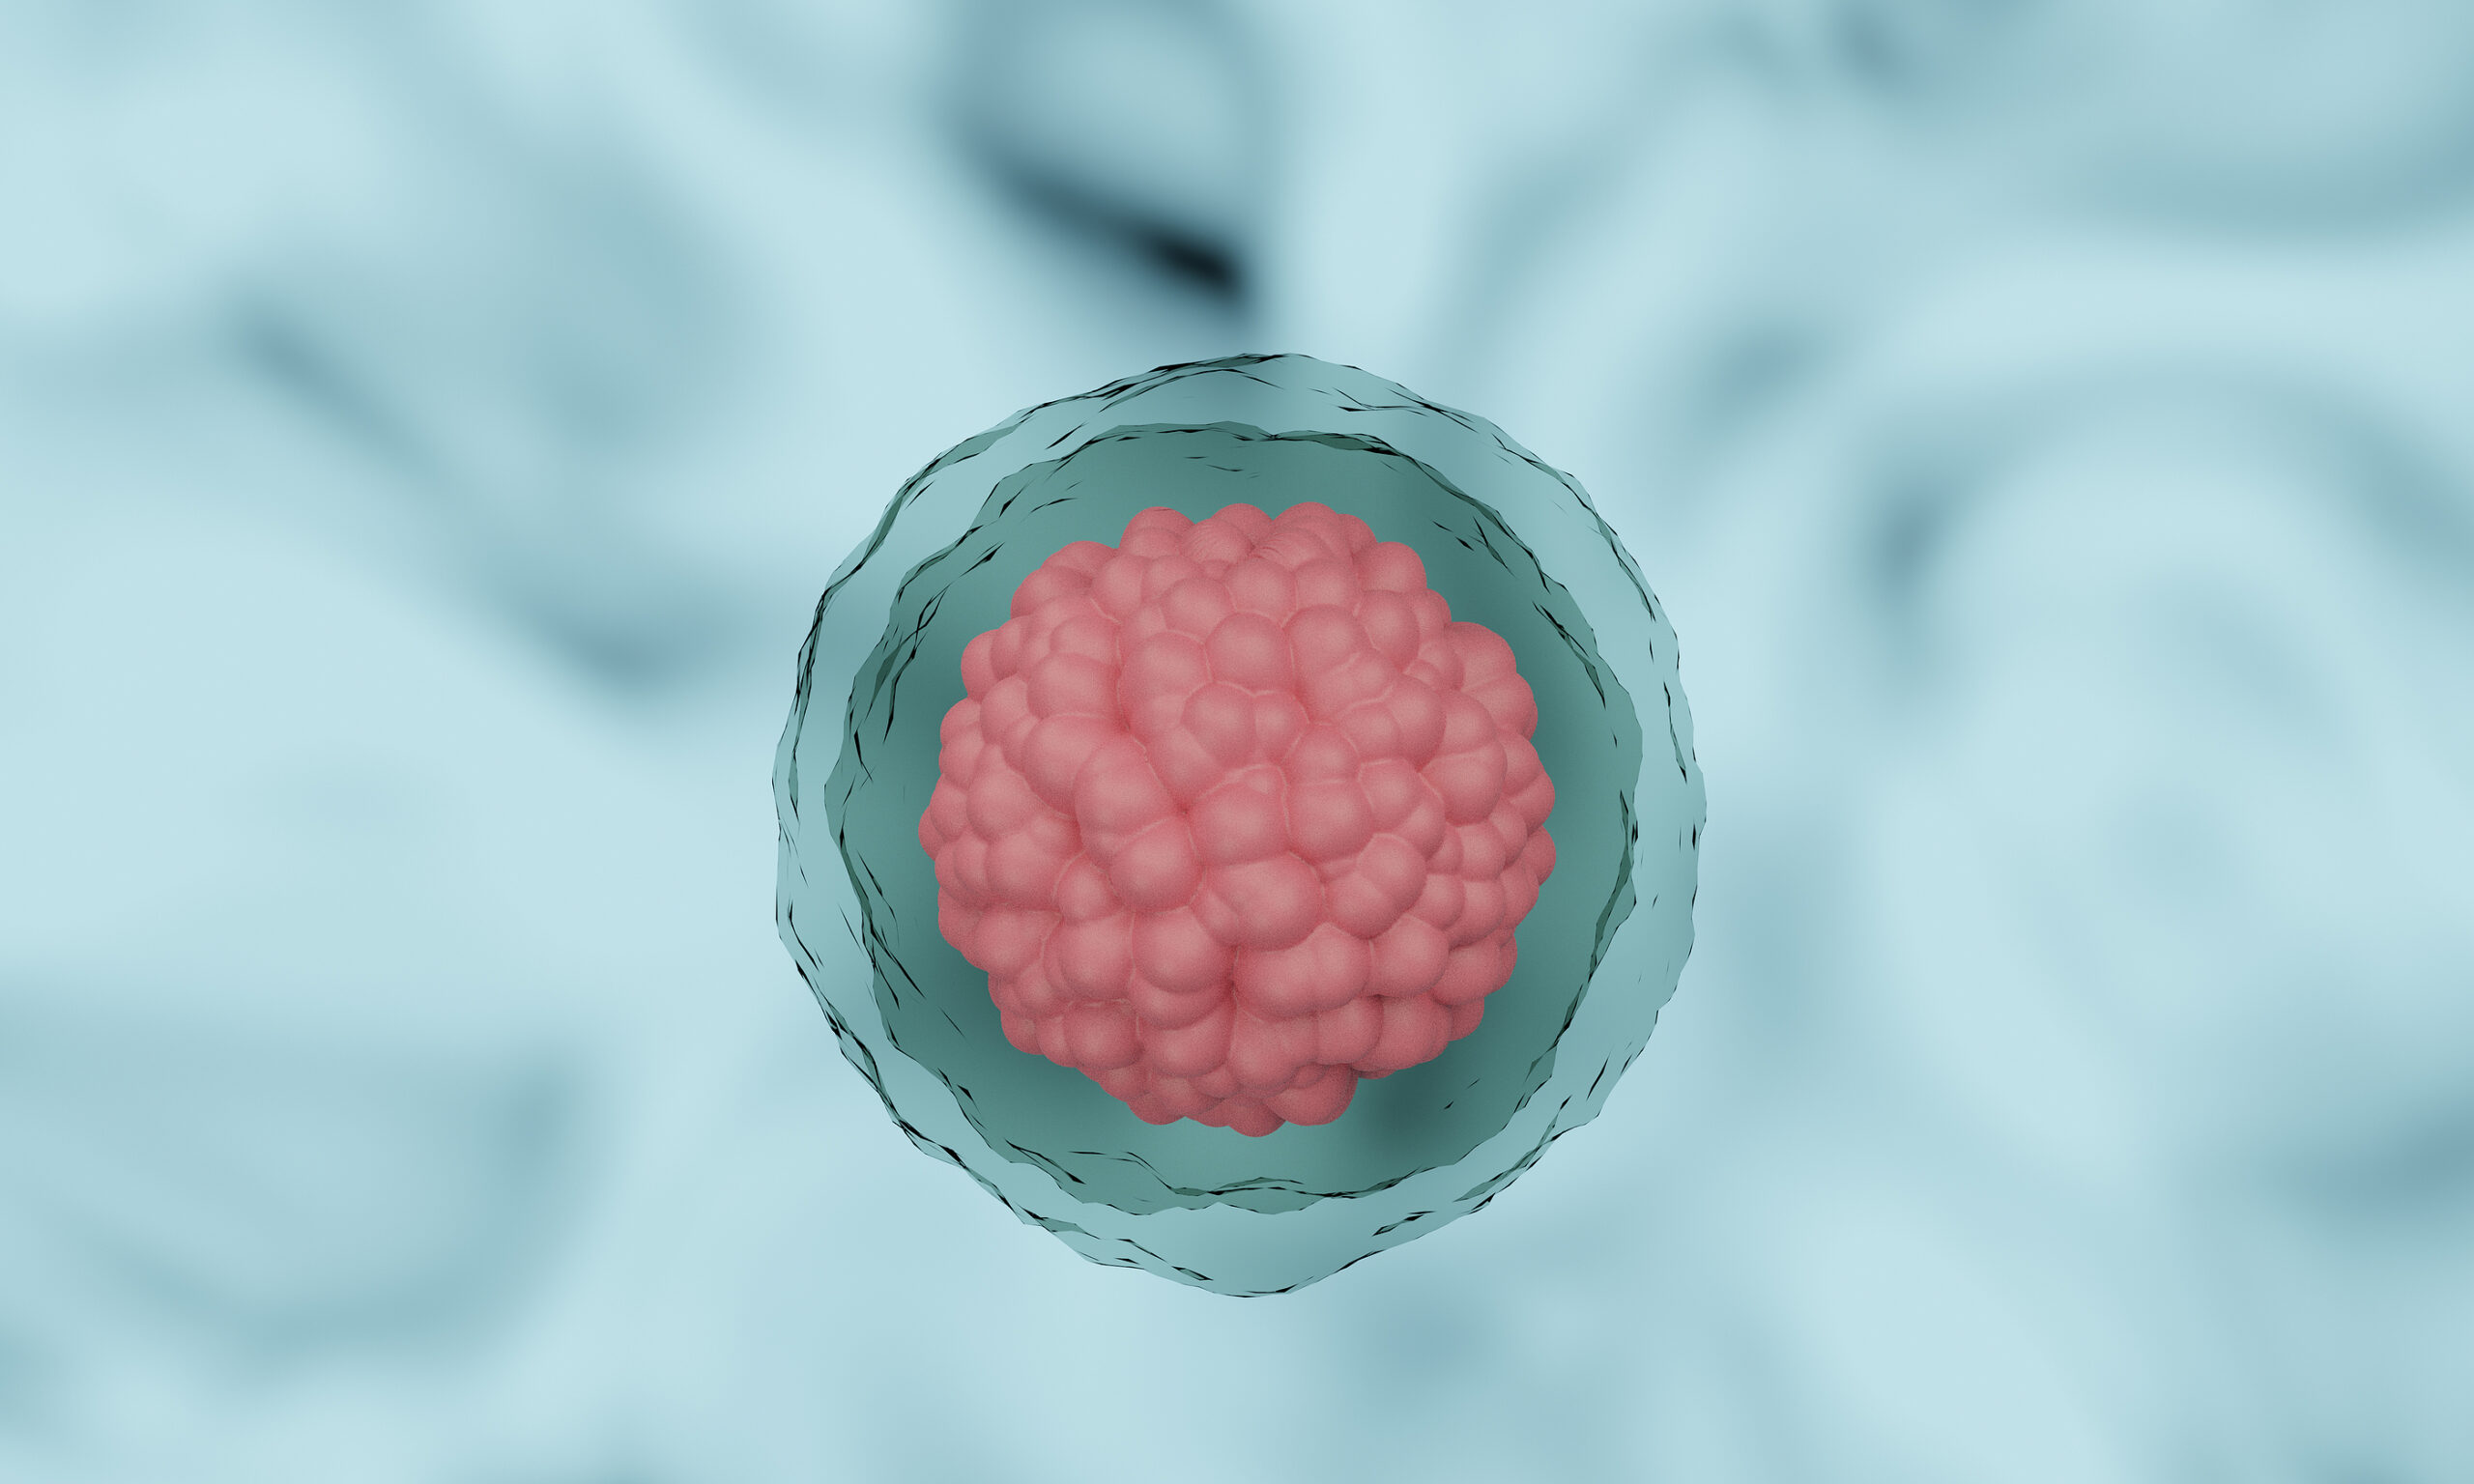 Células madre para replicar embriones humanos tempranos